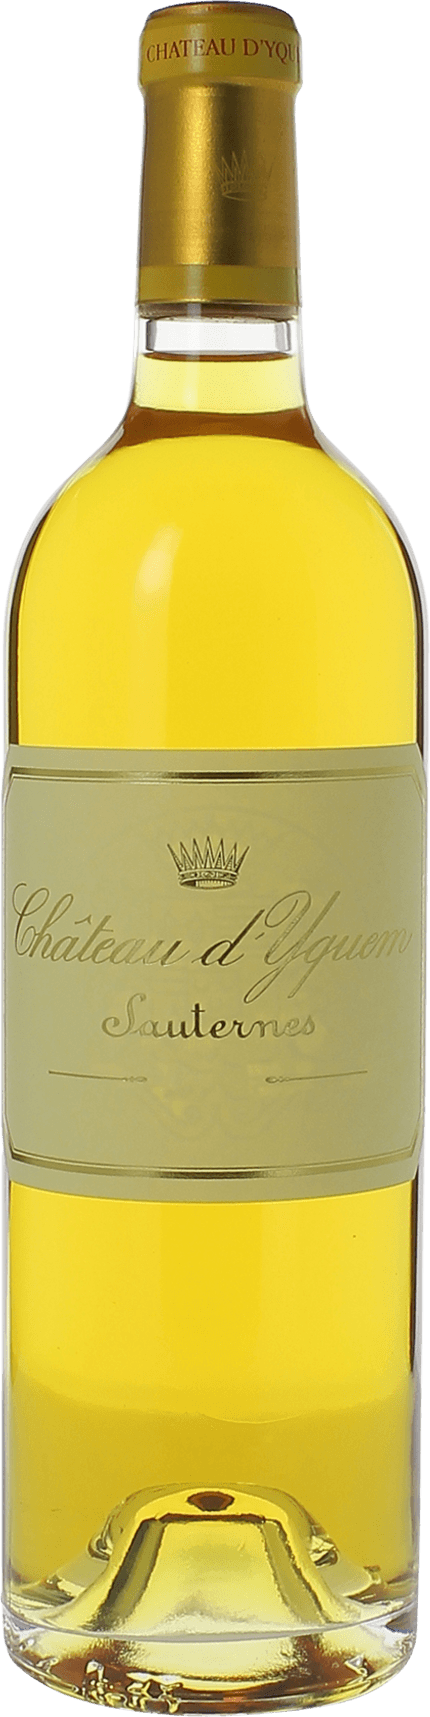 Yquem 1989 1er Grand cru class Sauternes, Bordeaux blanc